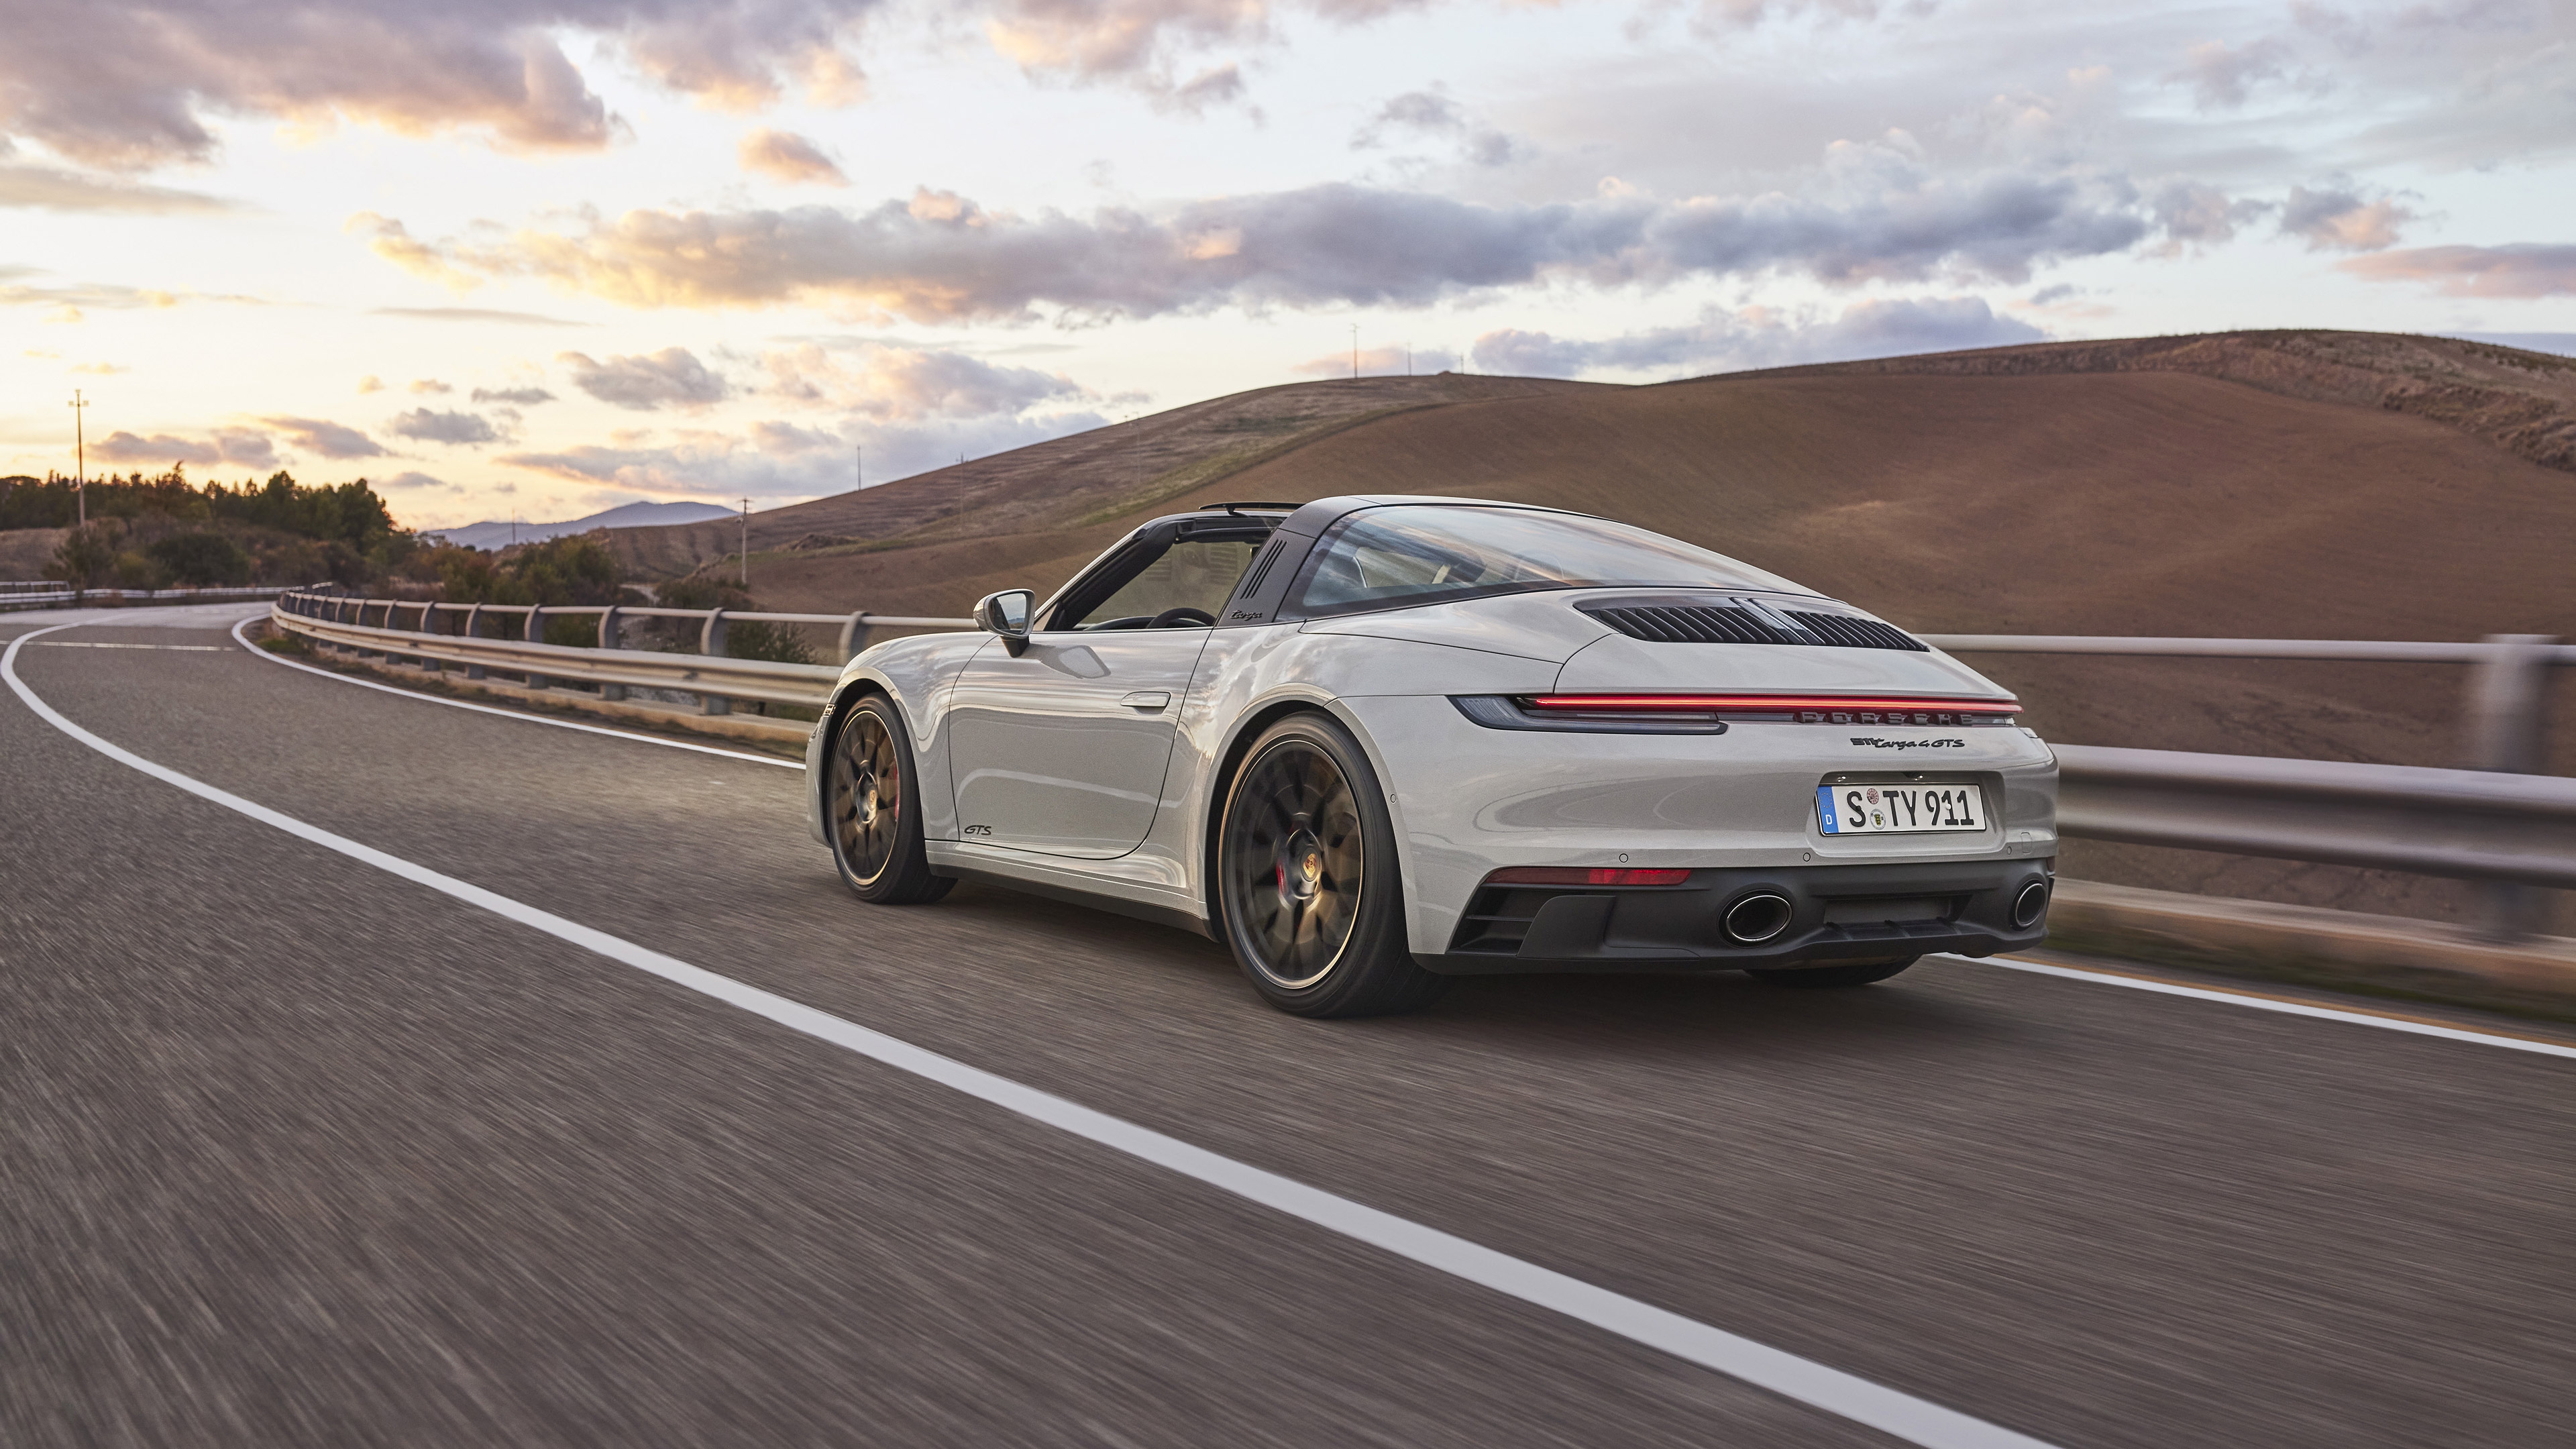 Descargar fondos de escritorio de Porsche 911 Targa 4 Gts HD